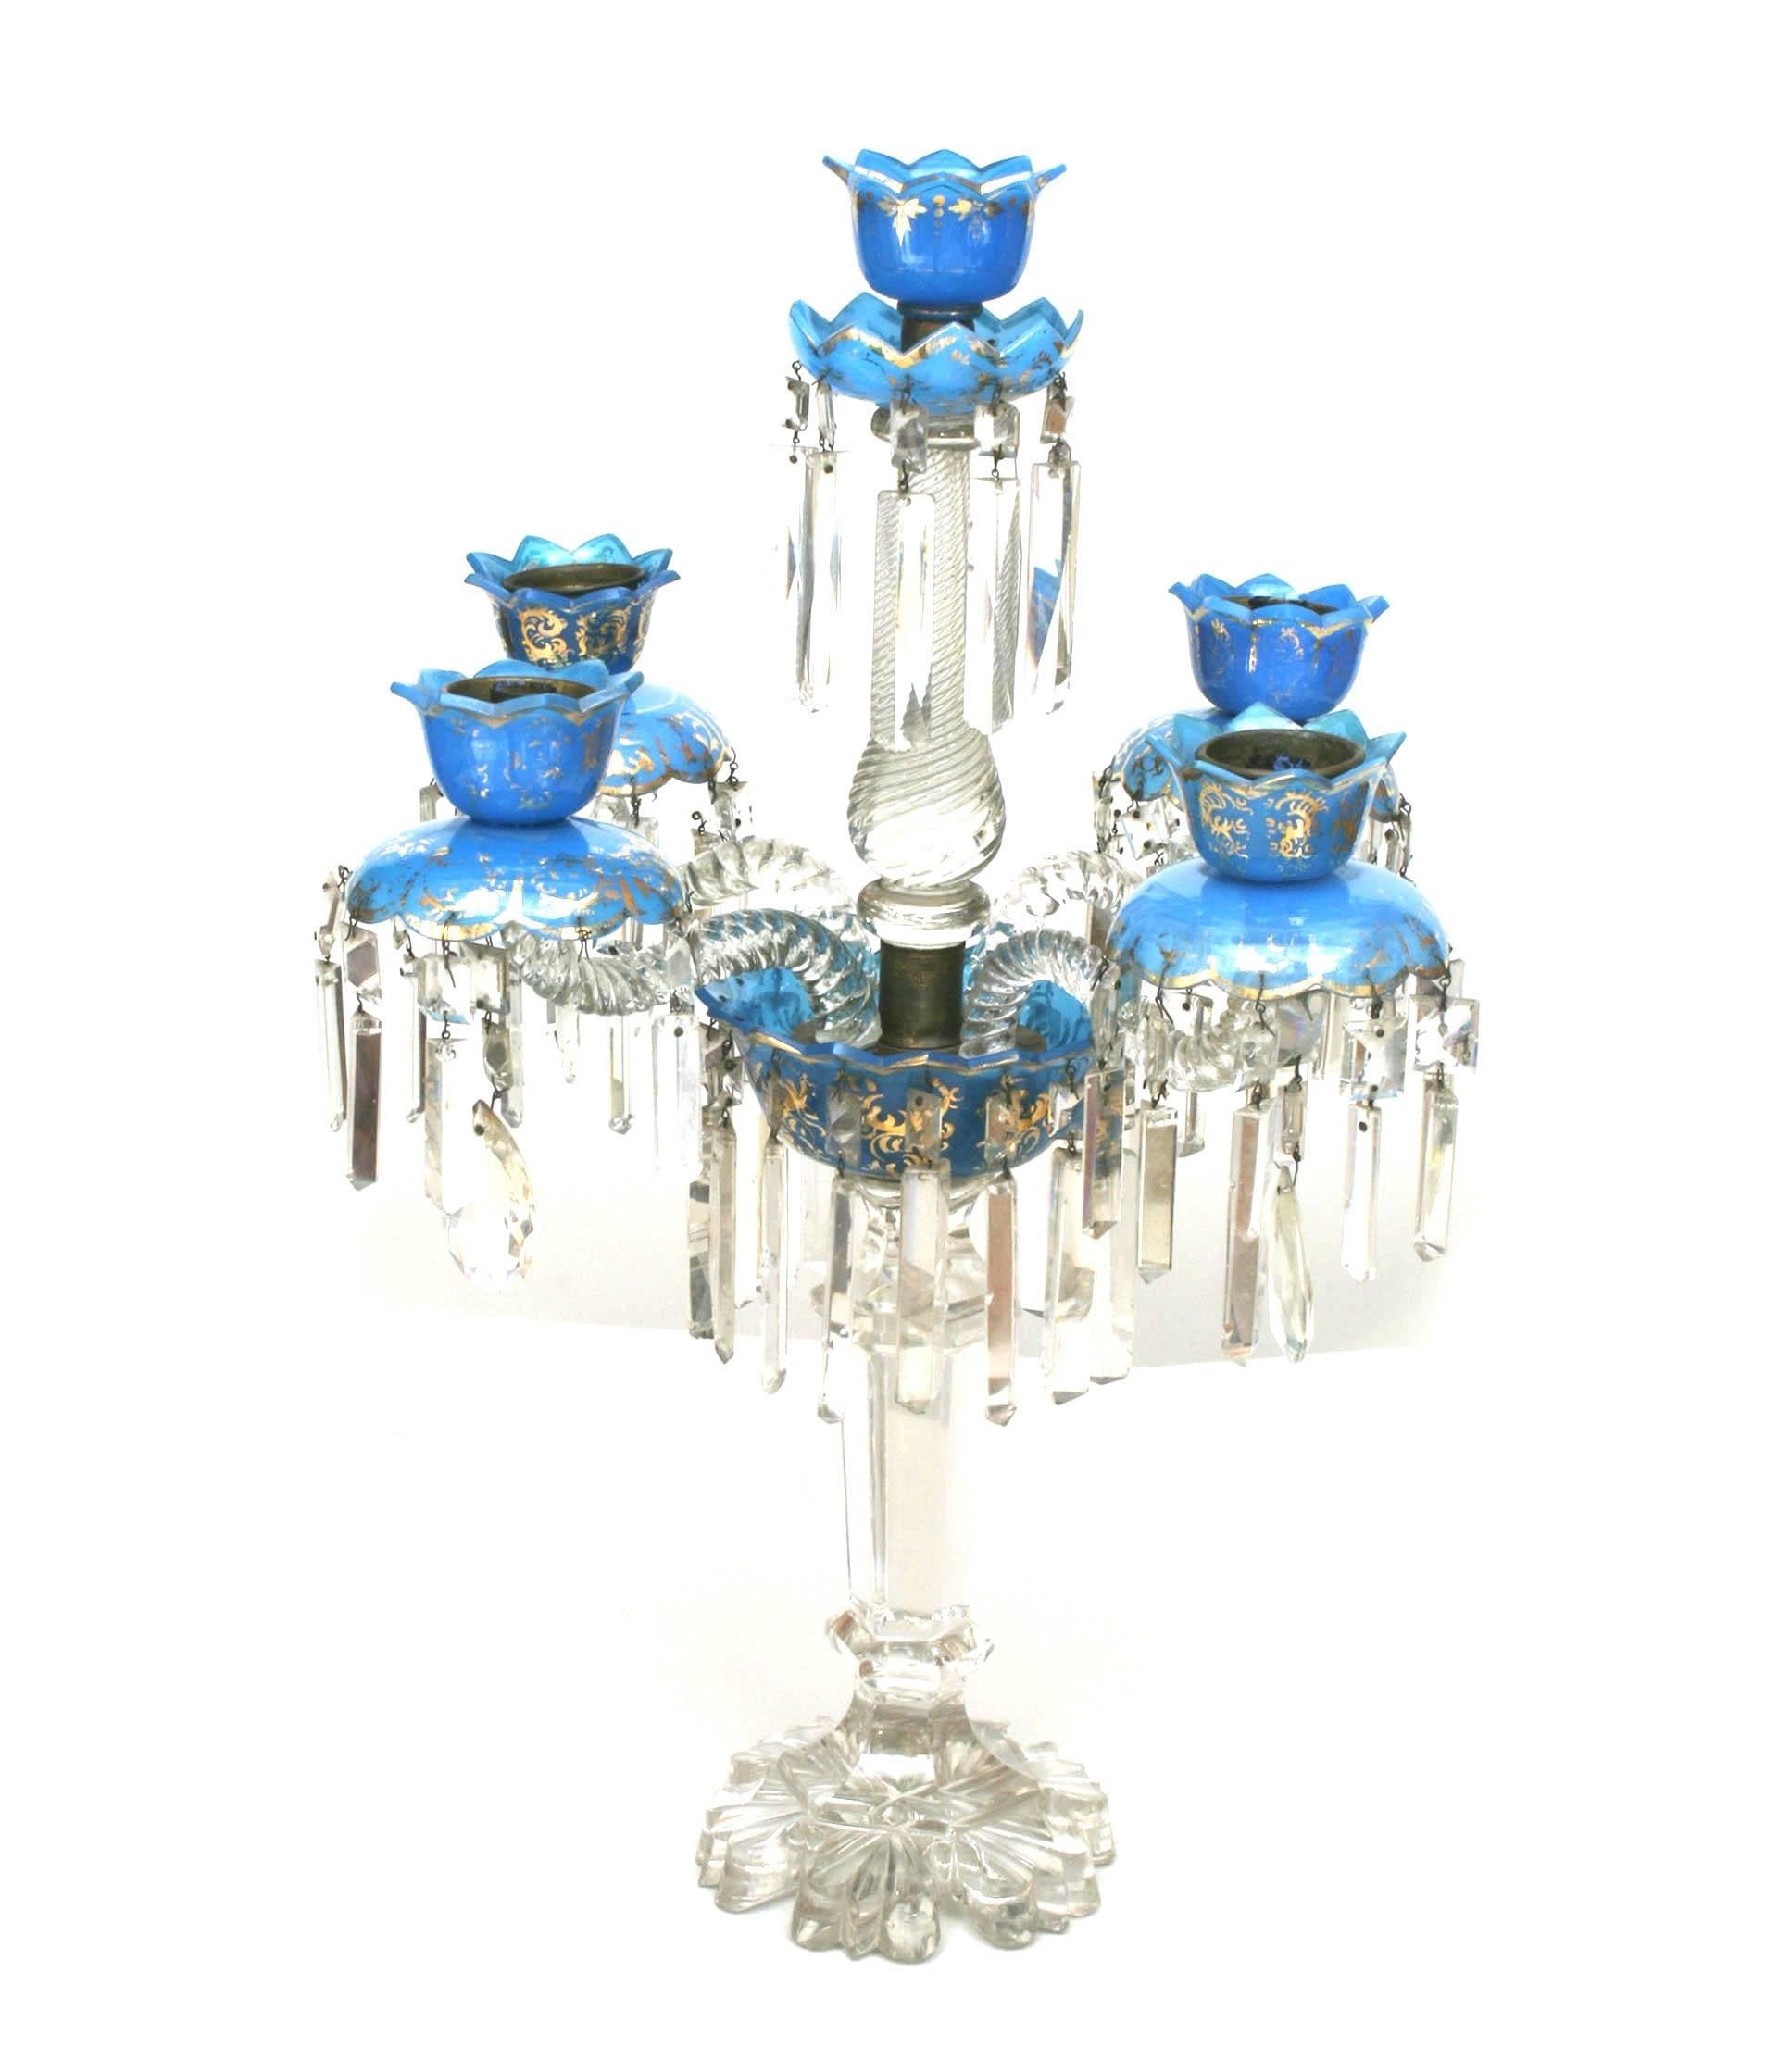 Paire de candélabres à 5 bras en cristal de Baccarat et opaline bleue, de style victorien français, au design tourbillonnant. (PRIX PAR PAILLE)
